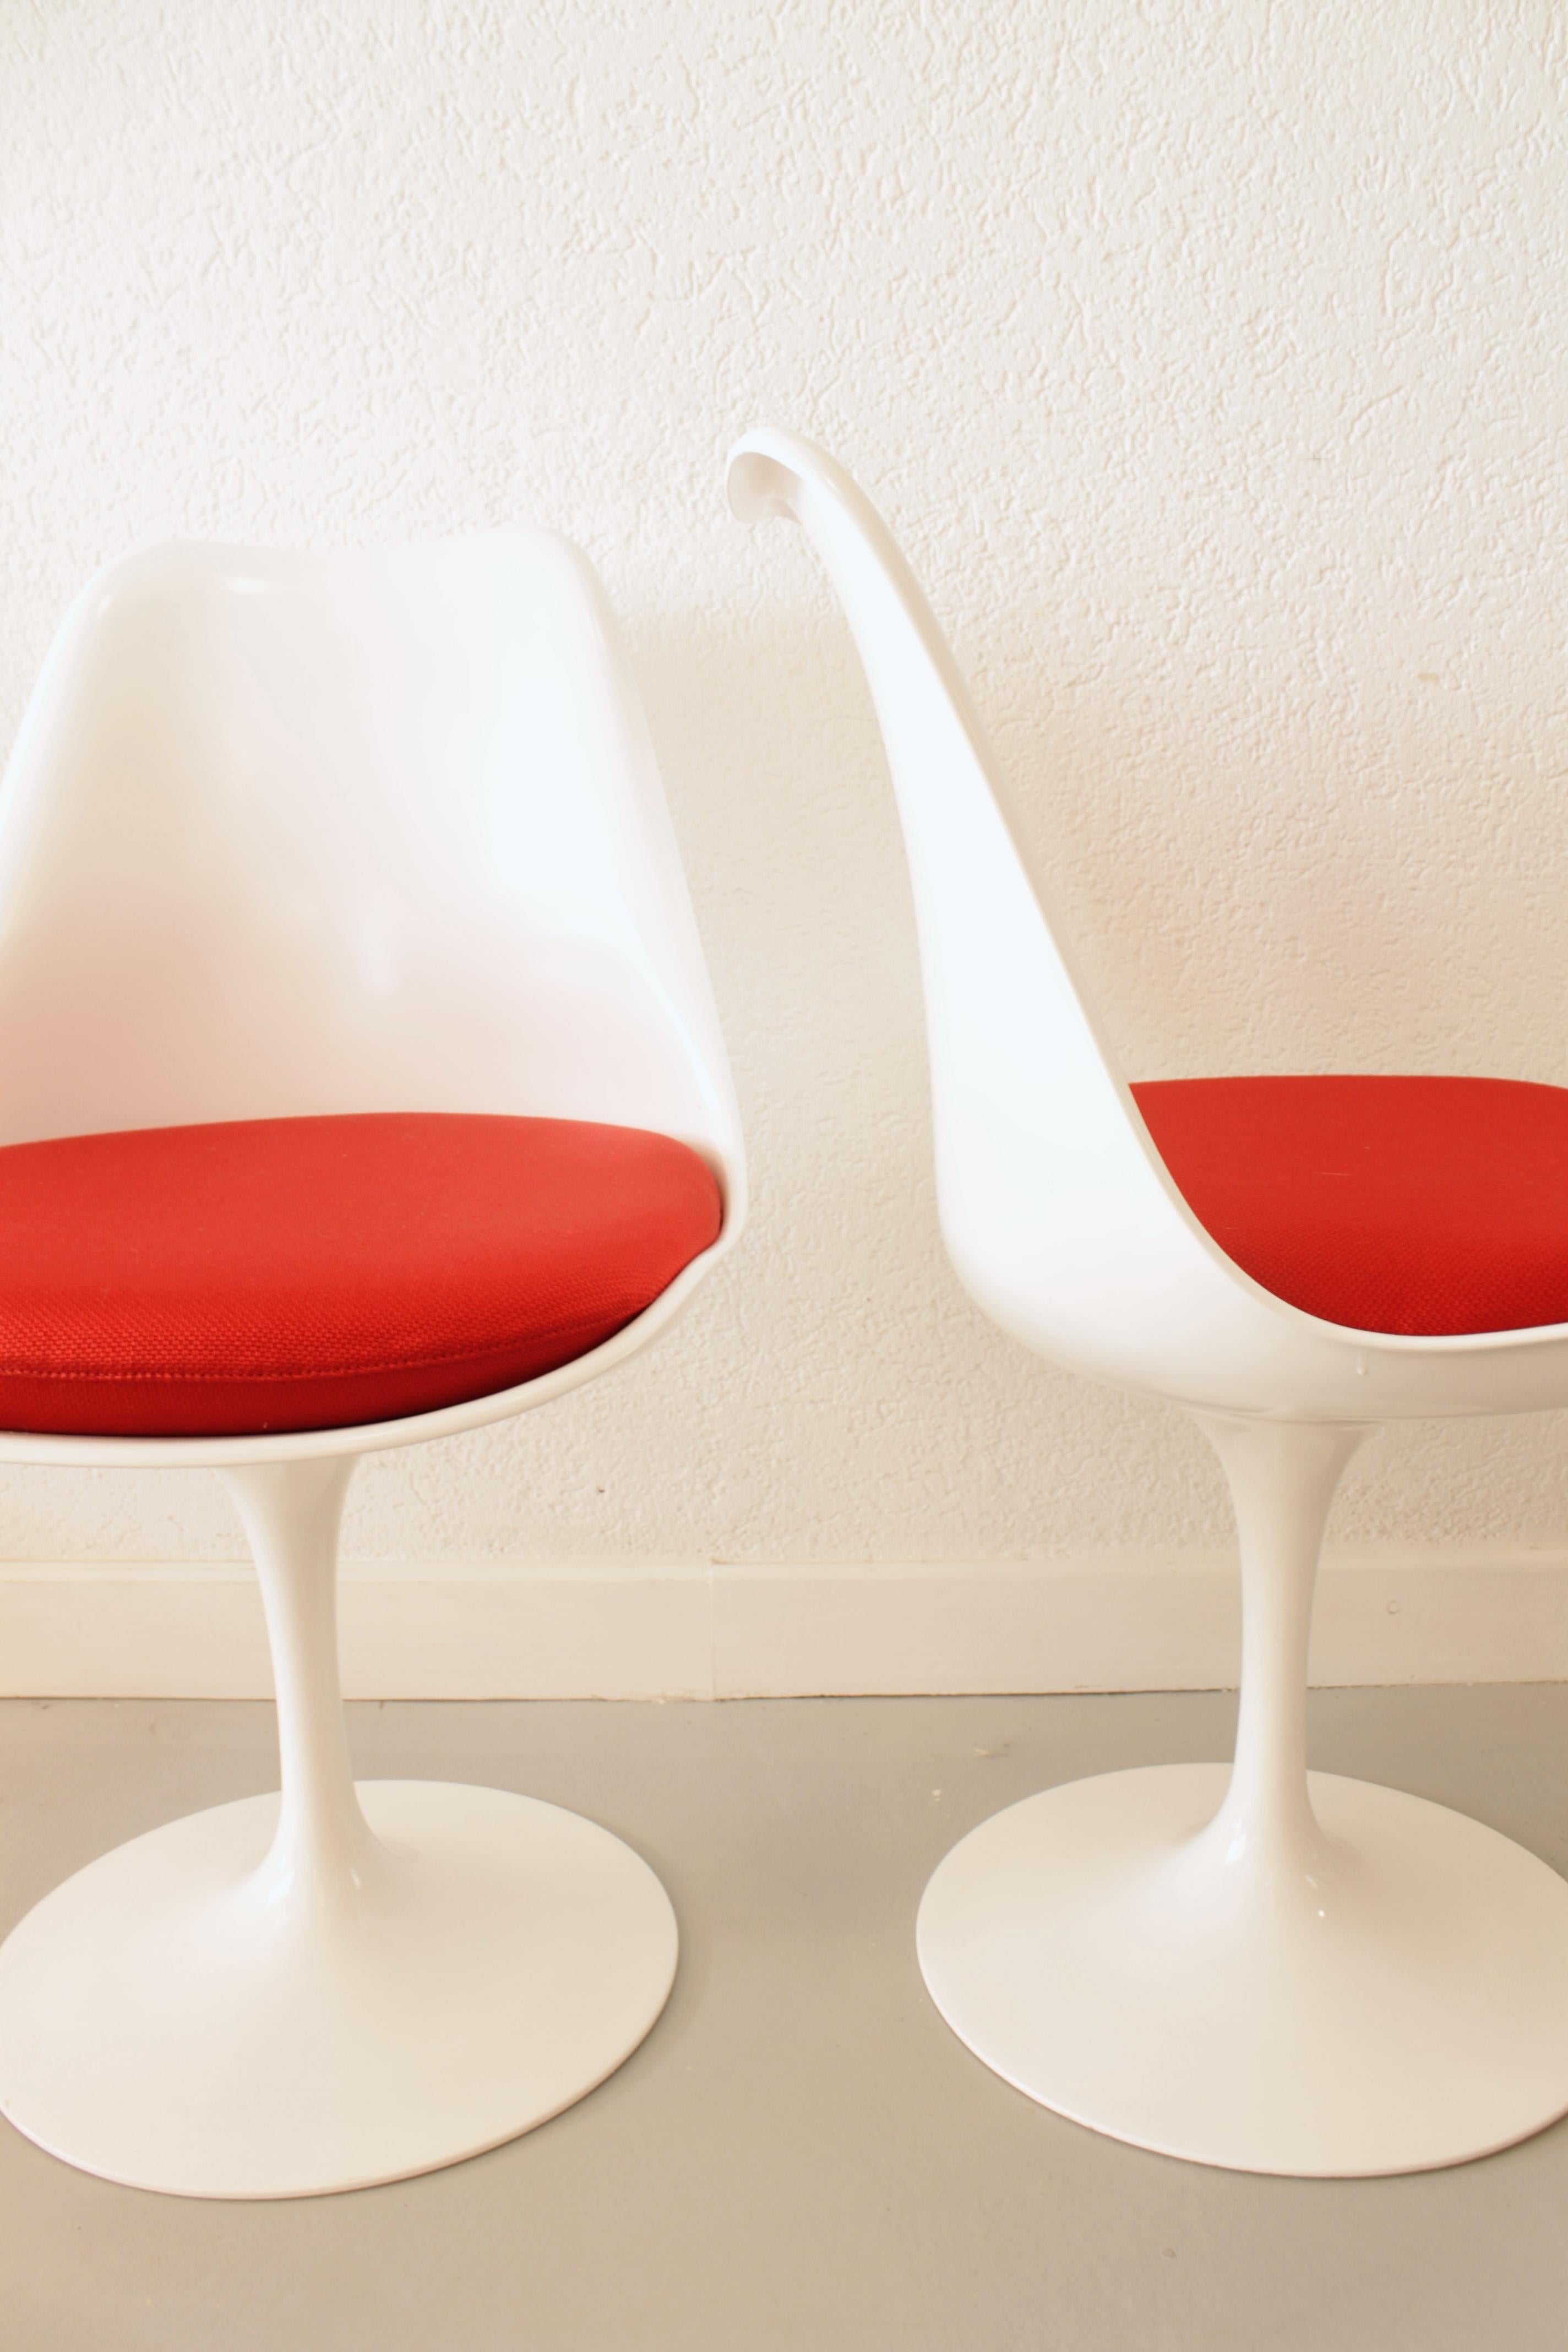 Pair of Tulip Chairs by Eero Saarinen 1